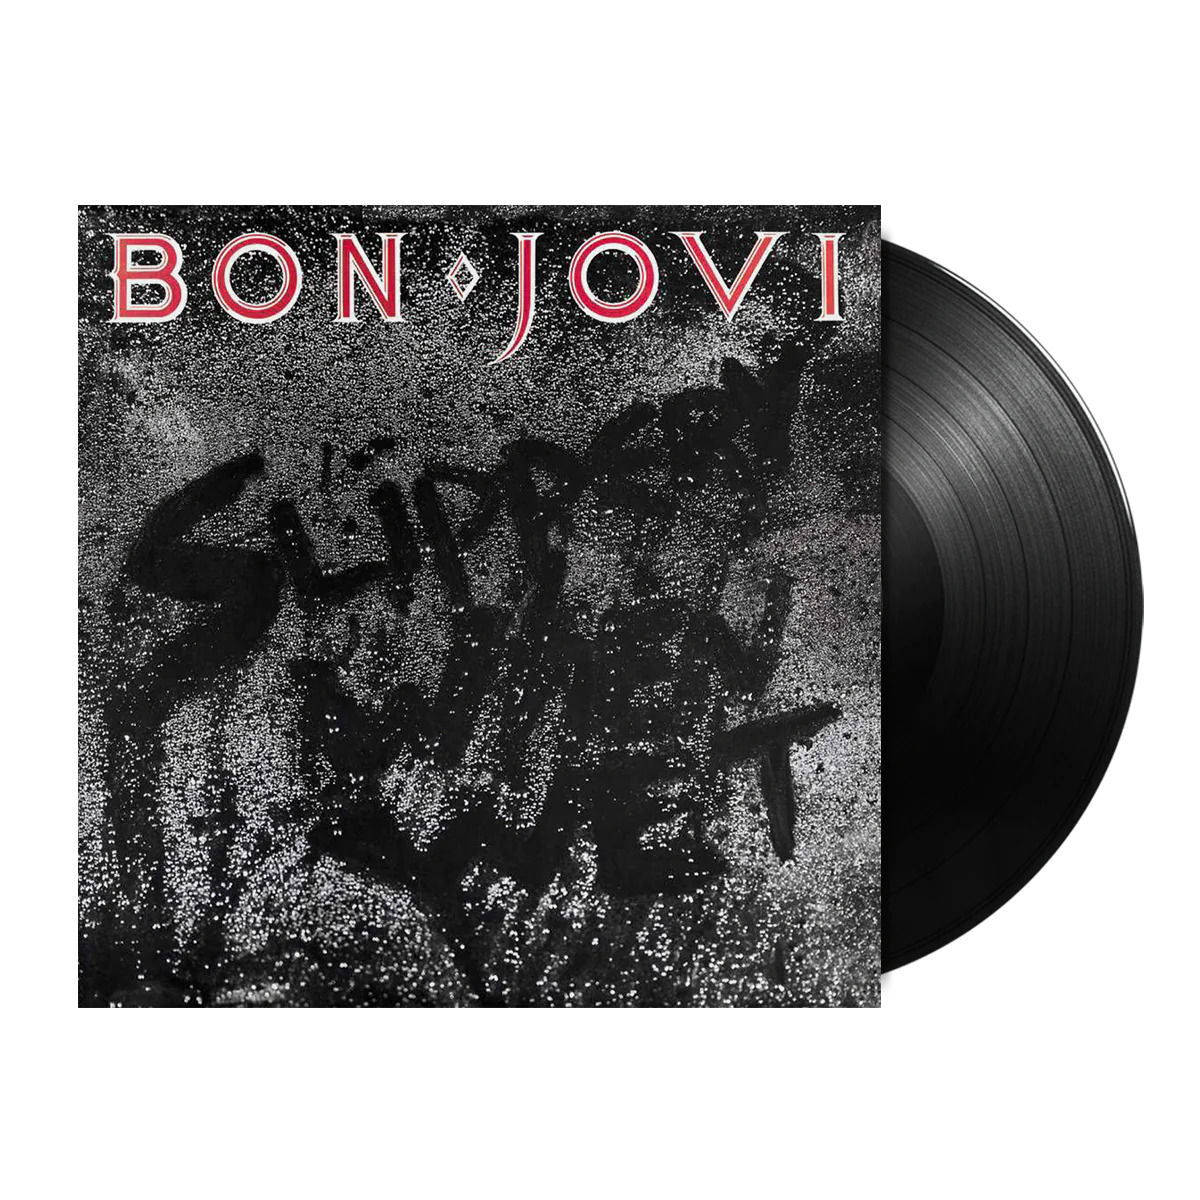 Bon Jovi - Slippery When Wet: Vinyl LP